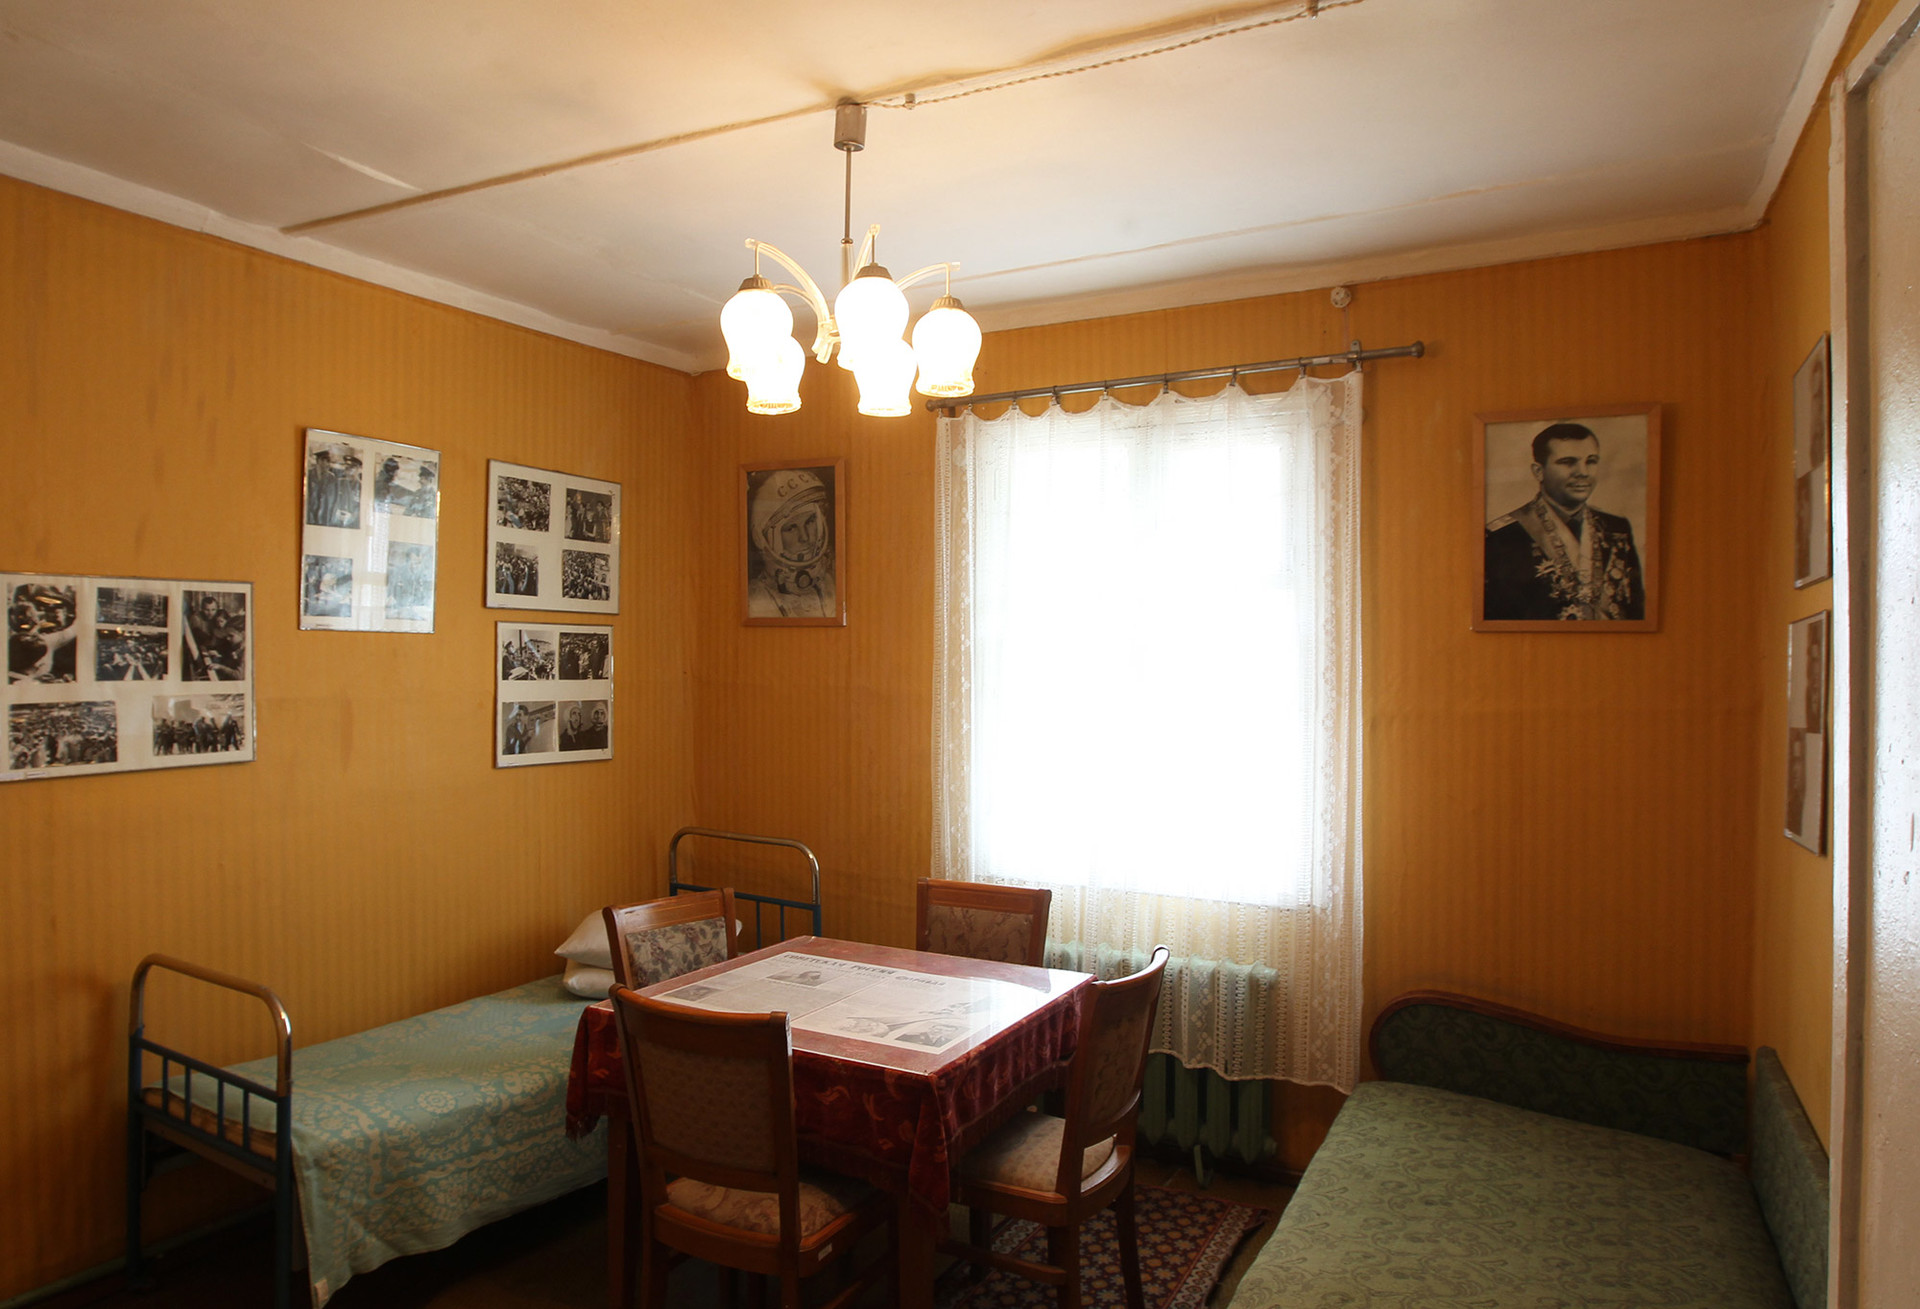 Интерьер дома Юрия Гагарина, часть экспозиции музея космодрома Байконур.